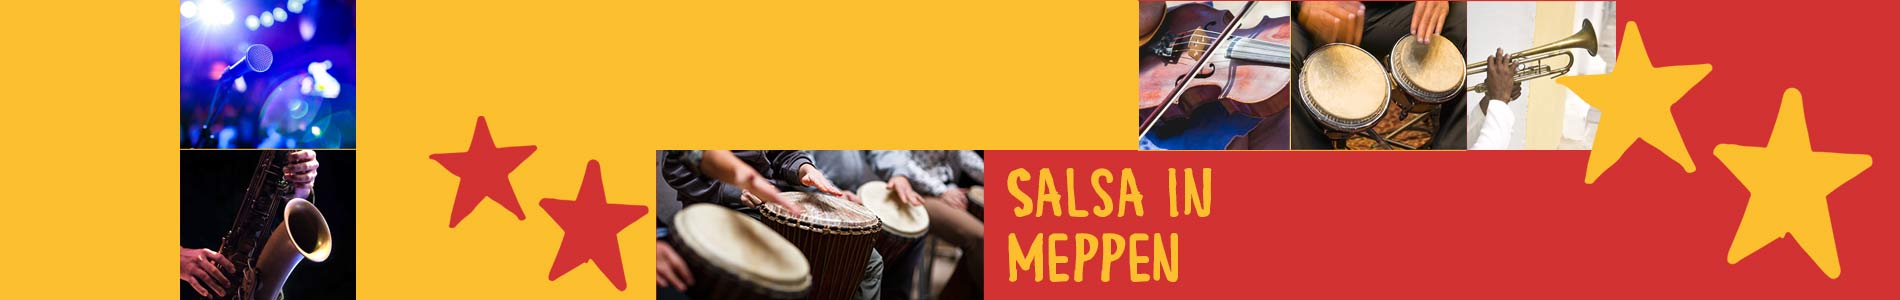 Salsa in Meppen – Salsa lernen und tanzen, Tanzkurse, Partys, Veranstaltungen